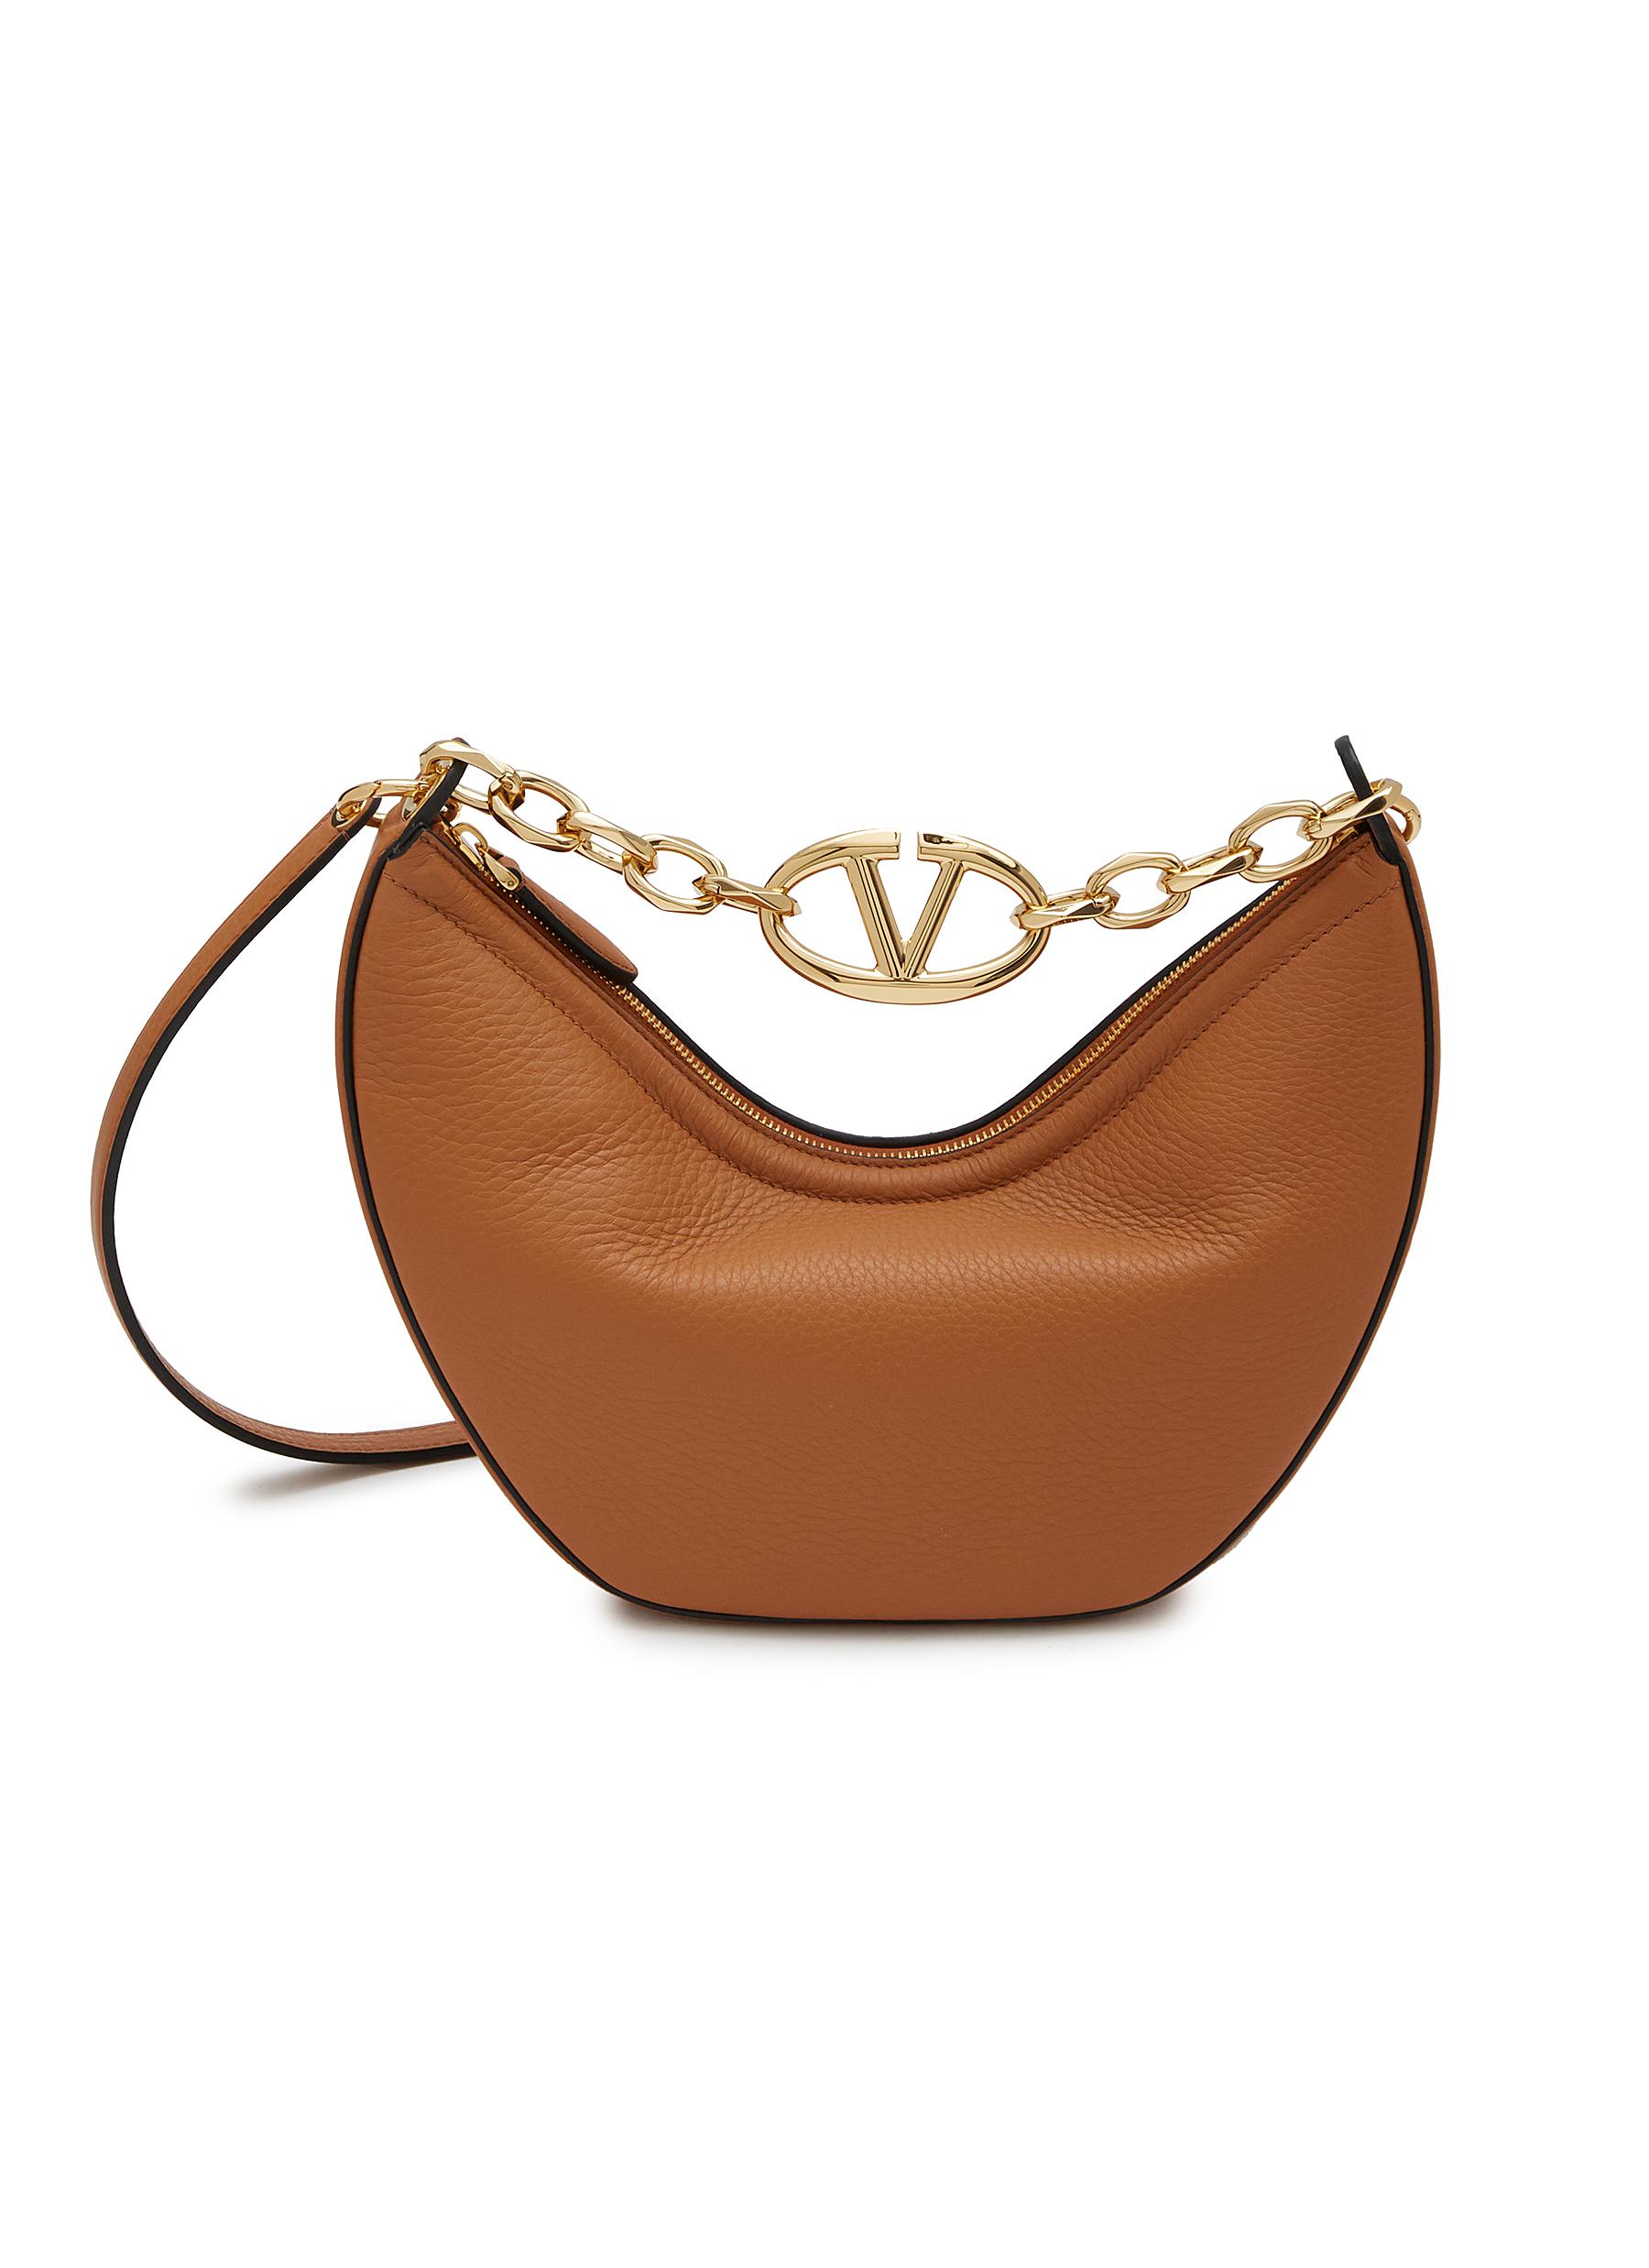 Valentino's Tiny Bag Has a Big Beauty Secret | Vogue